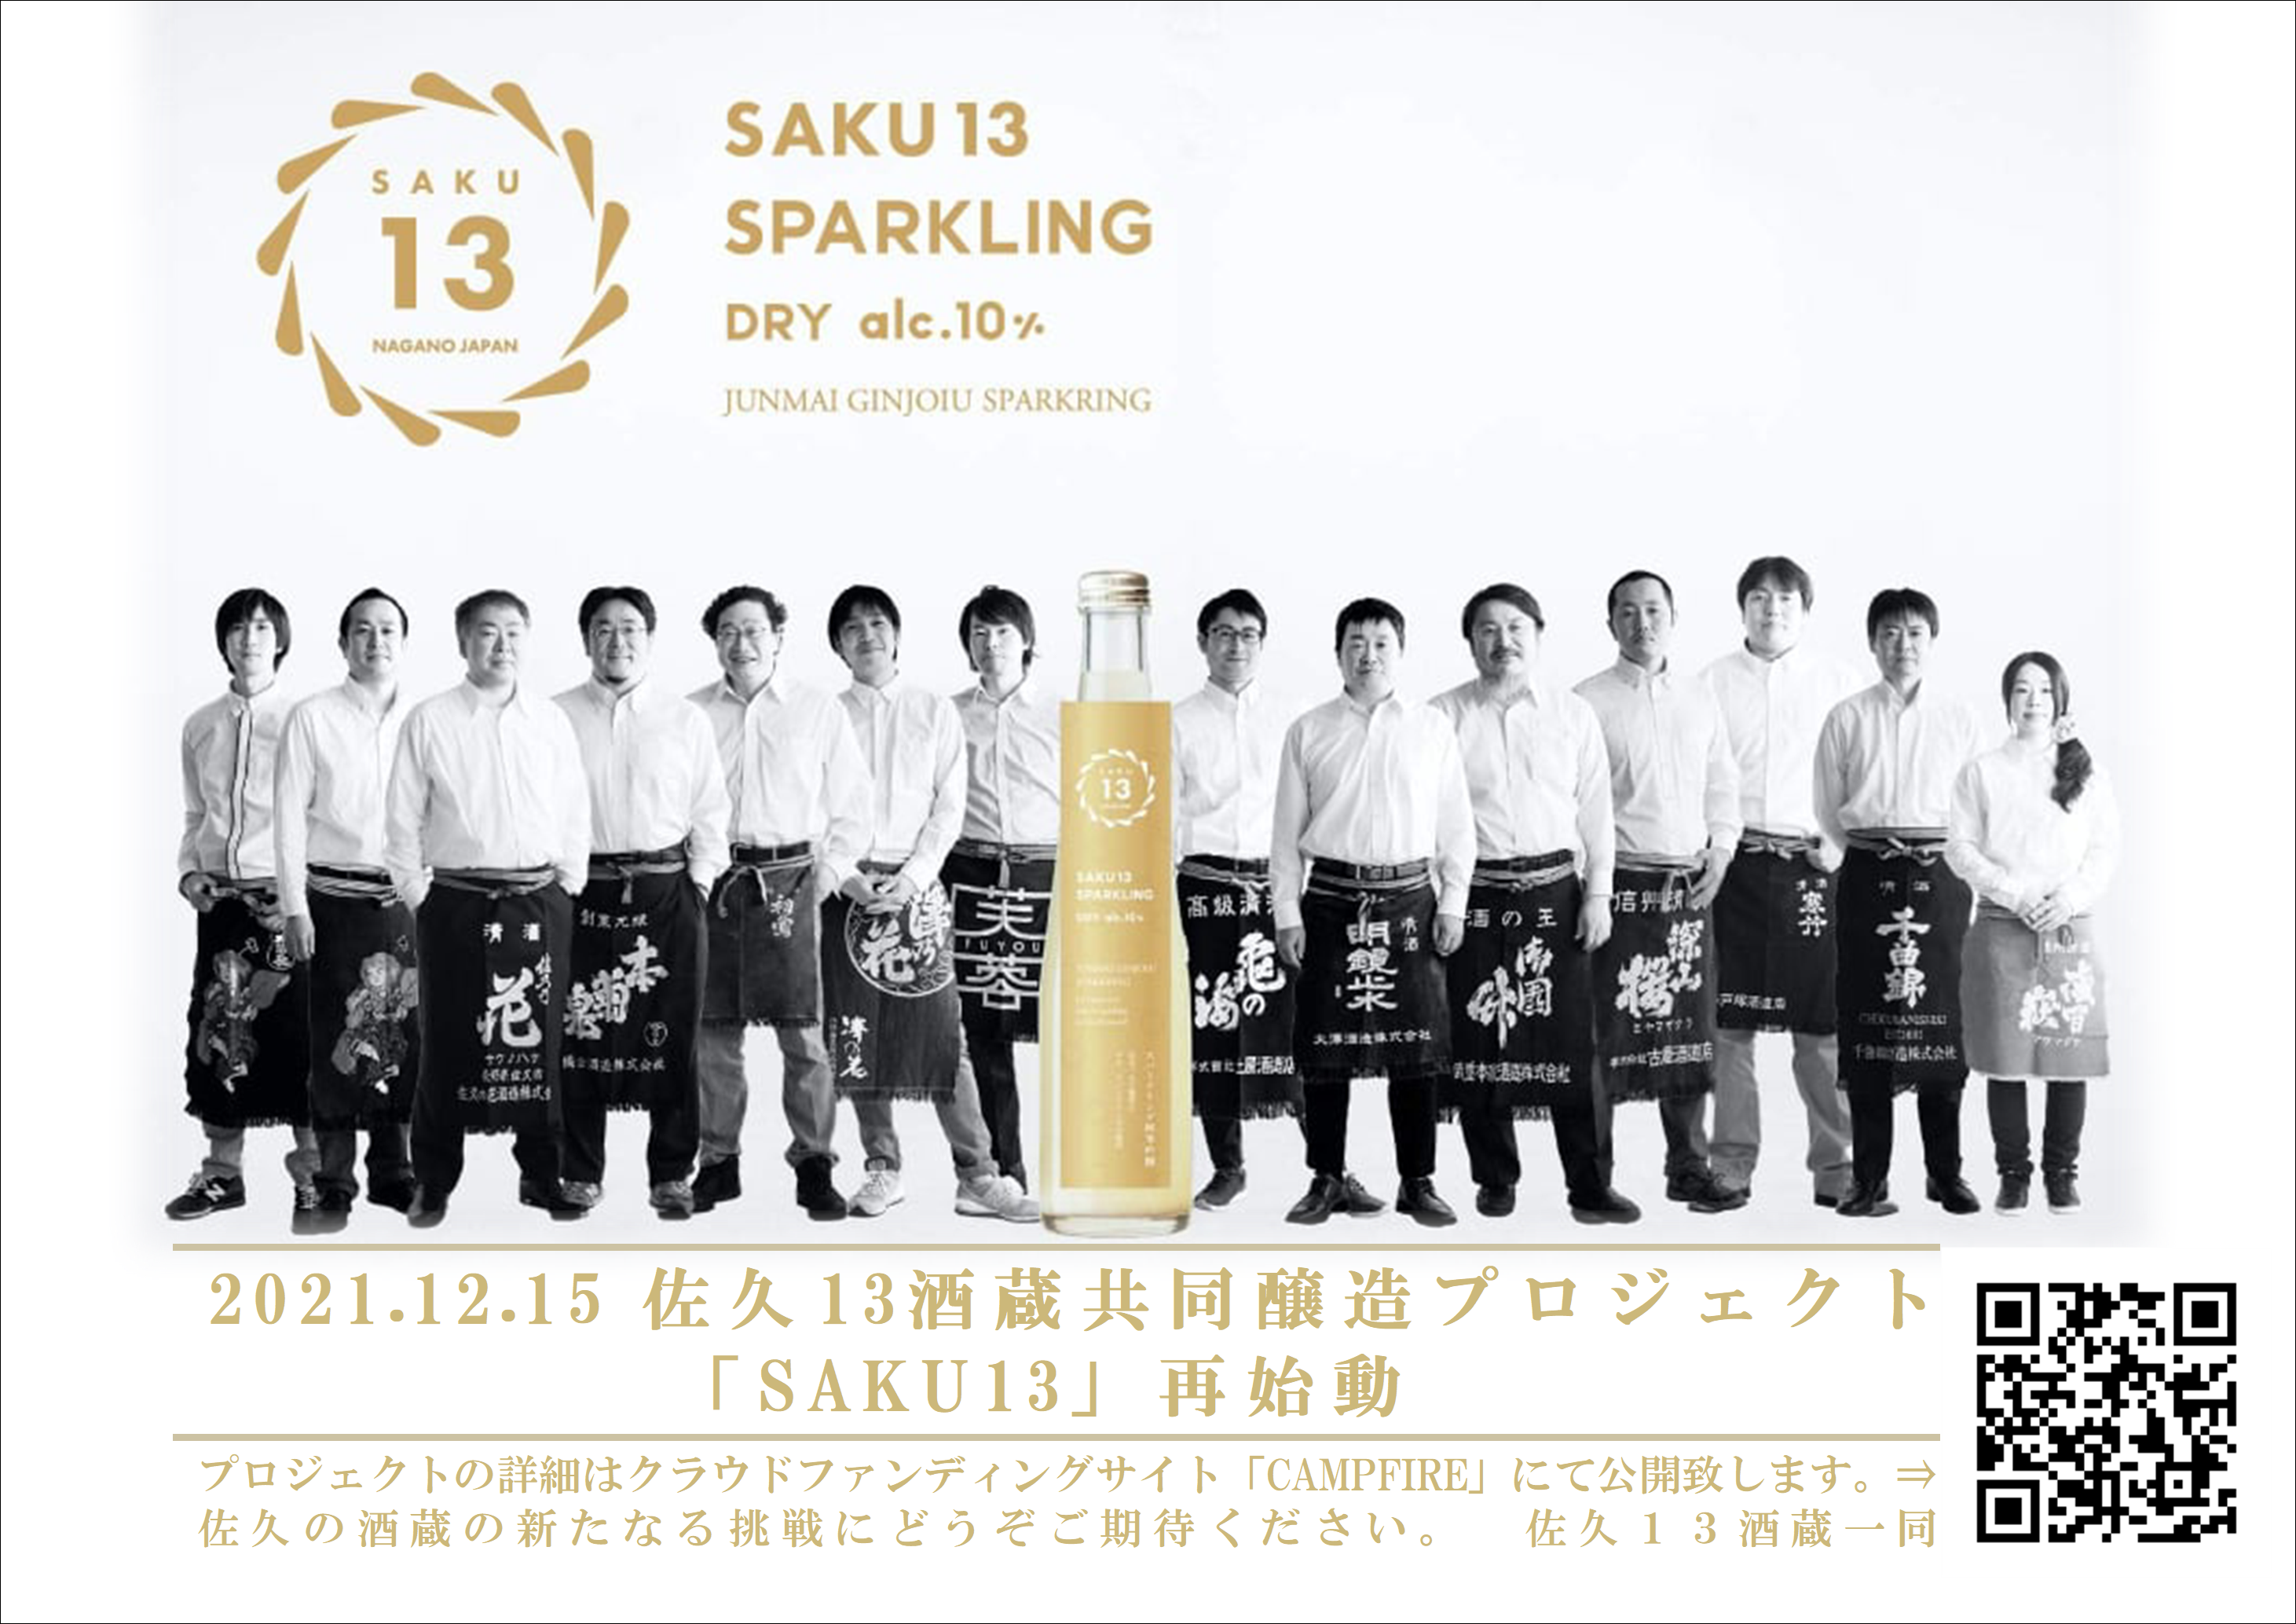 http://www.sakukankou.jp/topics/SAKU13sparkling.cleaned.PNG